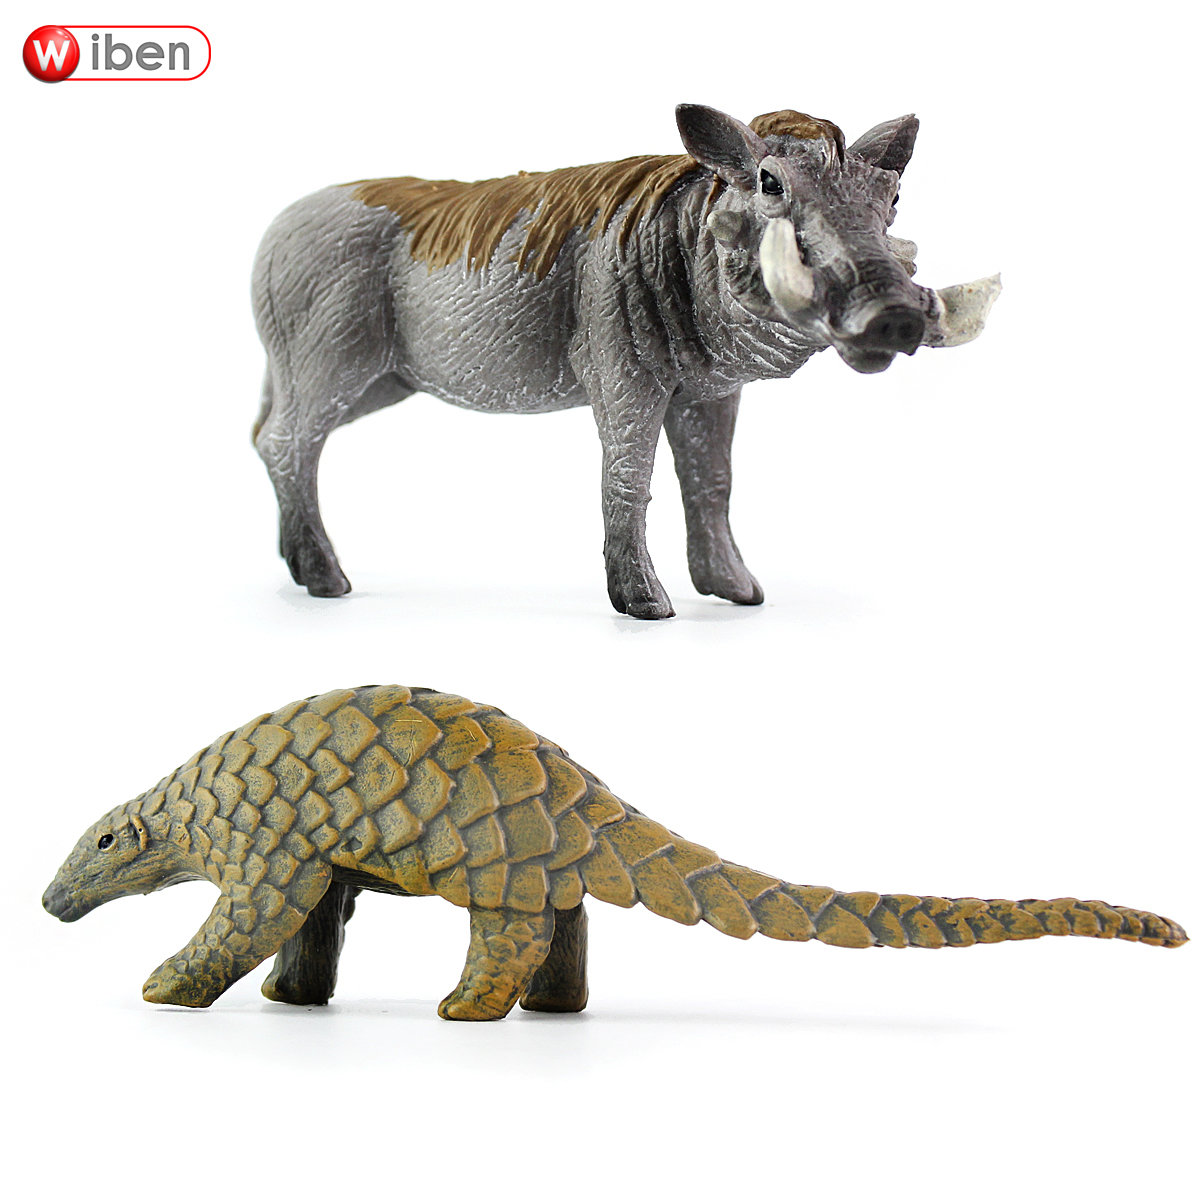 新款野生动物世界仿真野猪疣猪模型玩具穿山甲玩具小孩早教益智